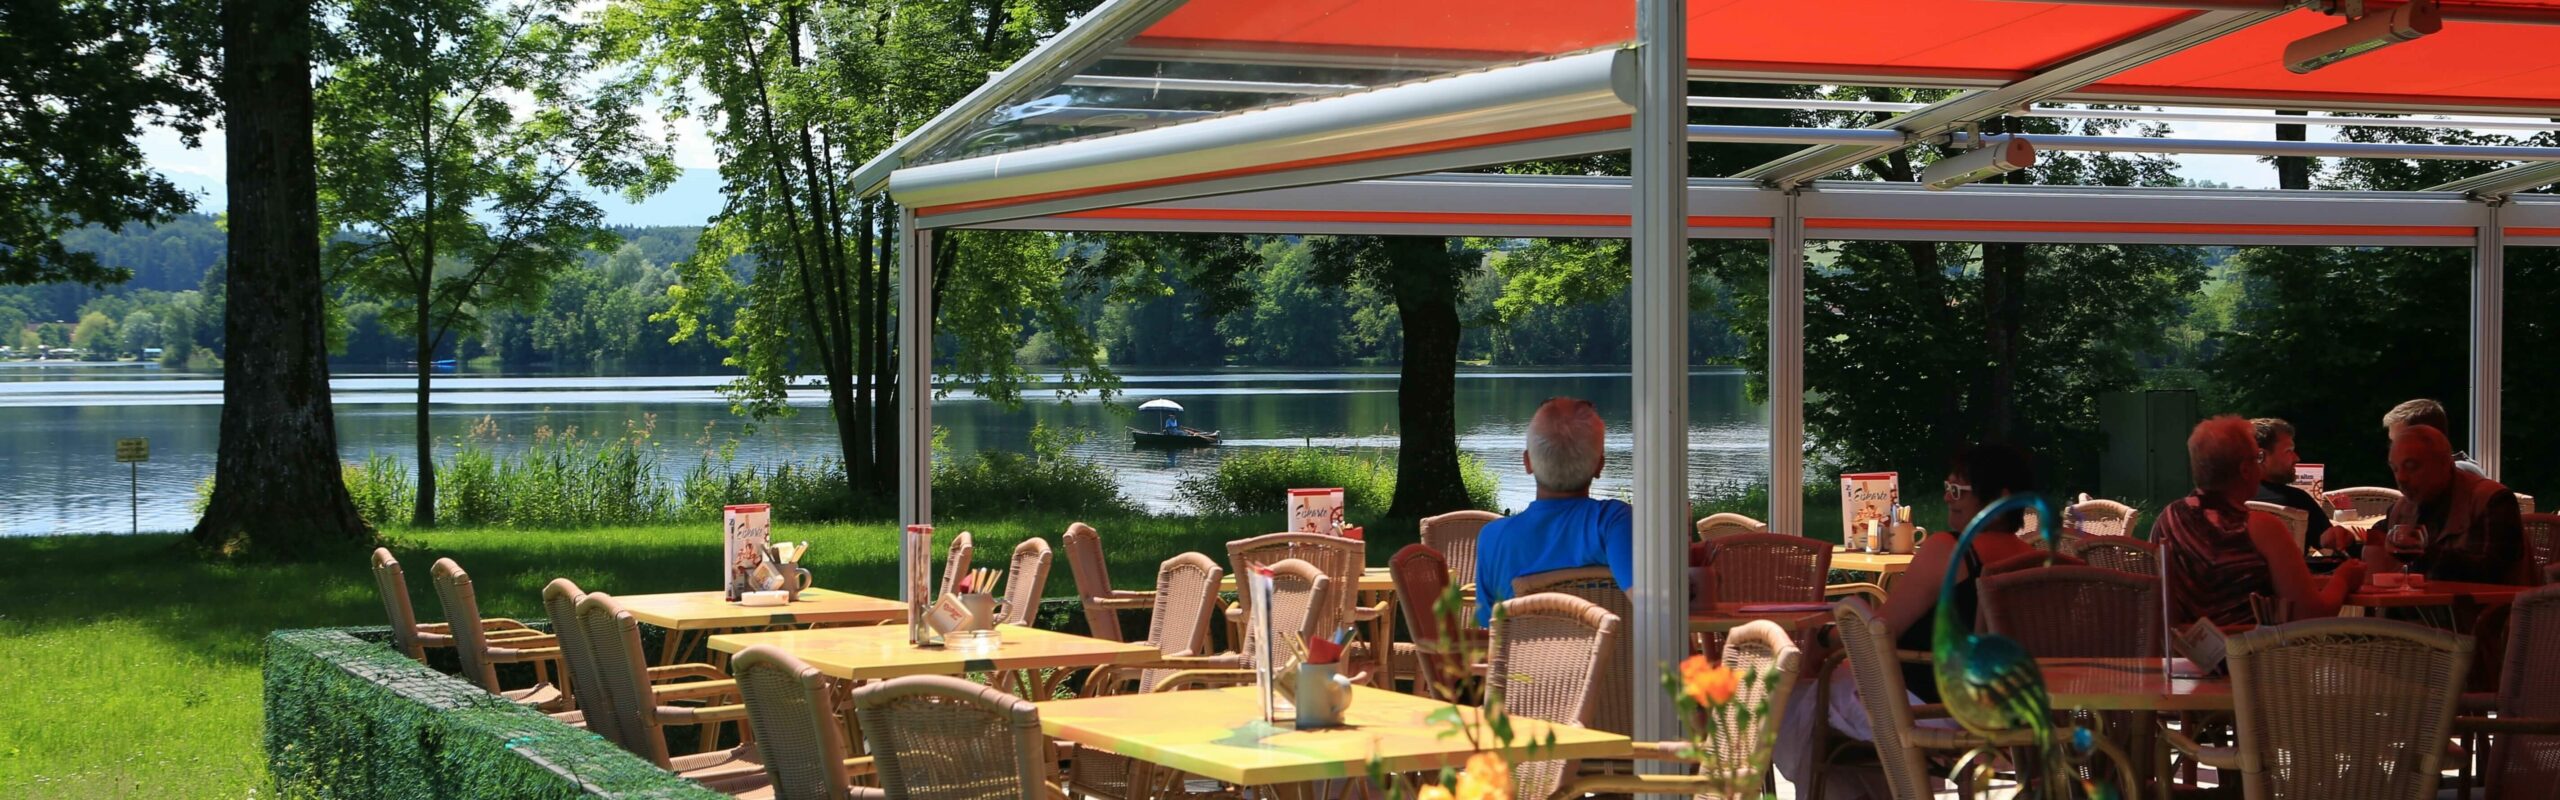 Außenansicht der mit einem Schirm überdachten Terrasse des Restaurants zum alten Fährhaus vor dem See.